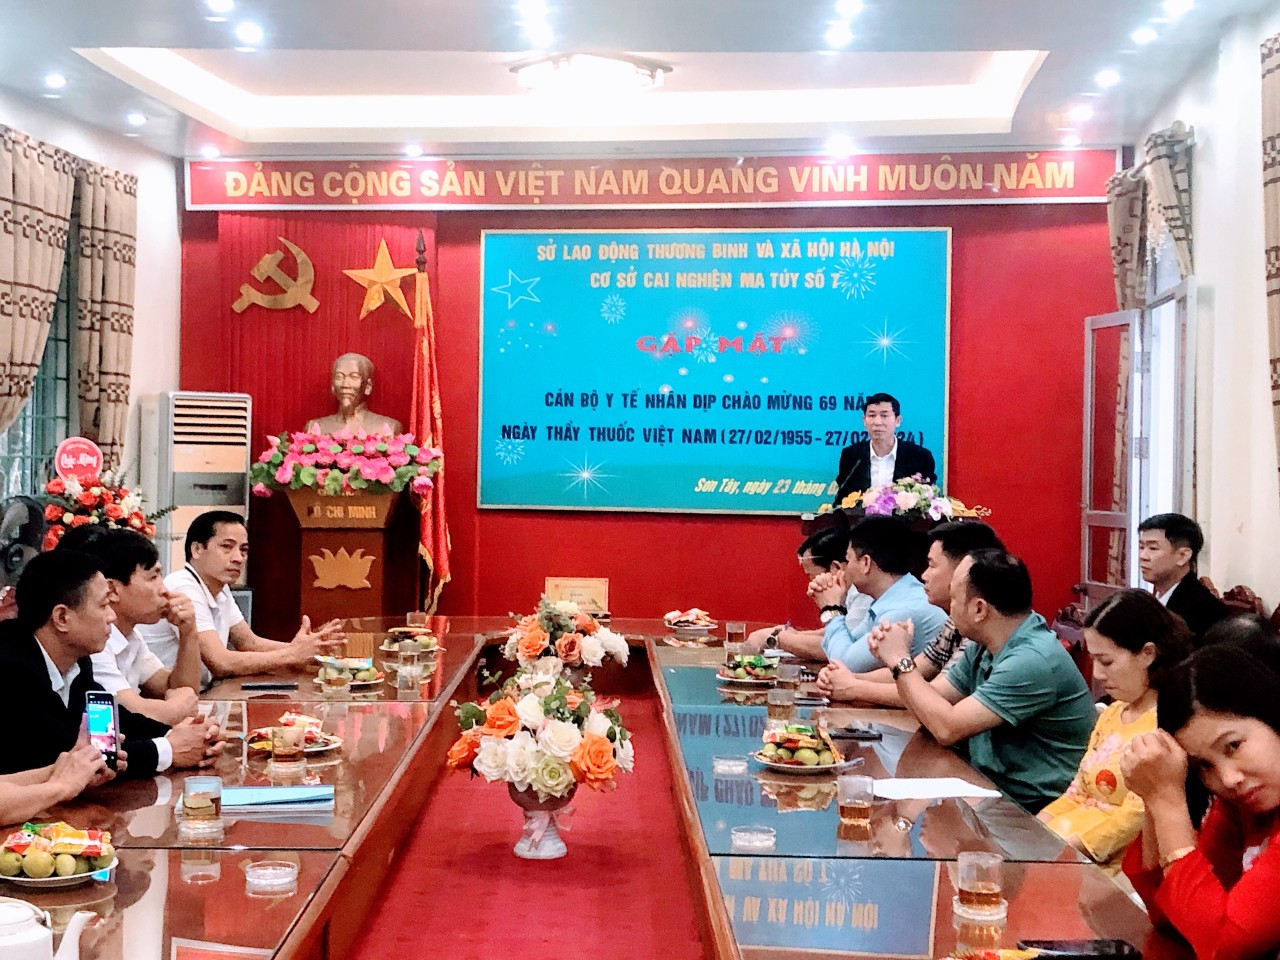 Cơ sở cai nghiện ma túy số 7 Hà Nội tổ chức buổi gặp mặt cán bộ làm công tác y tế của Cơ sở nhân dịp kỷ niệm 69 năm ngày  Thầy thuốc Việt Nam 27/2 (27/02/1955-27/02/2024)